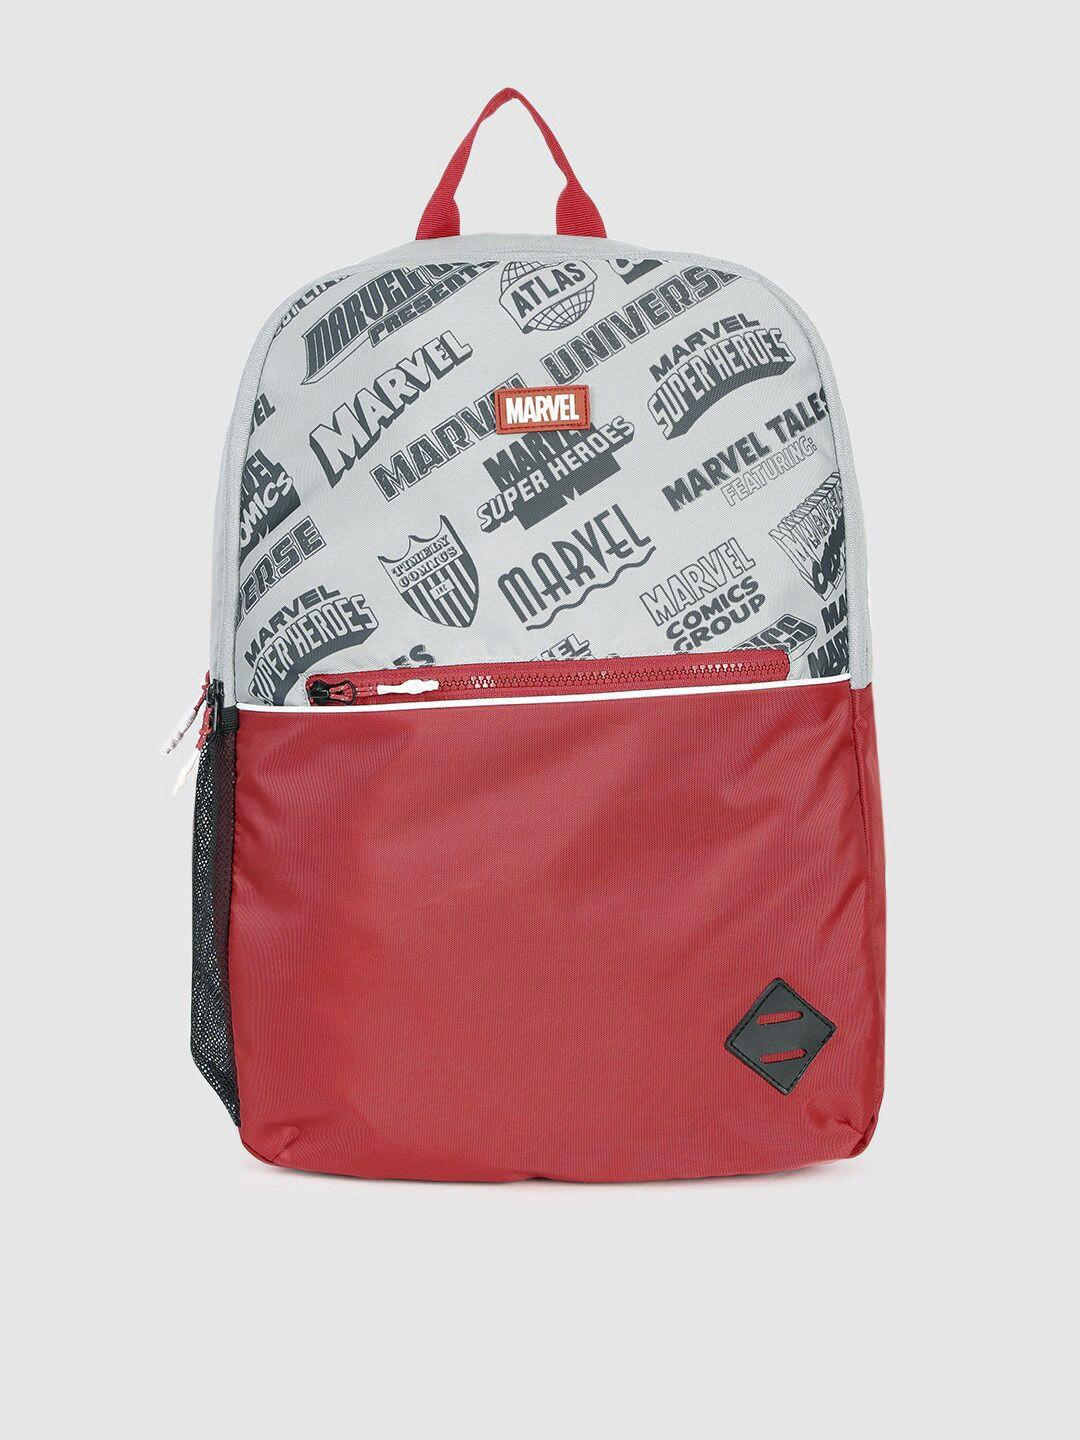 kook n keech unisex white & red printed backpack